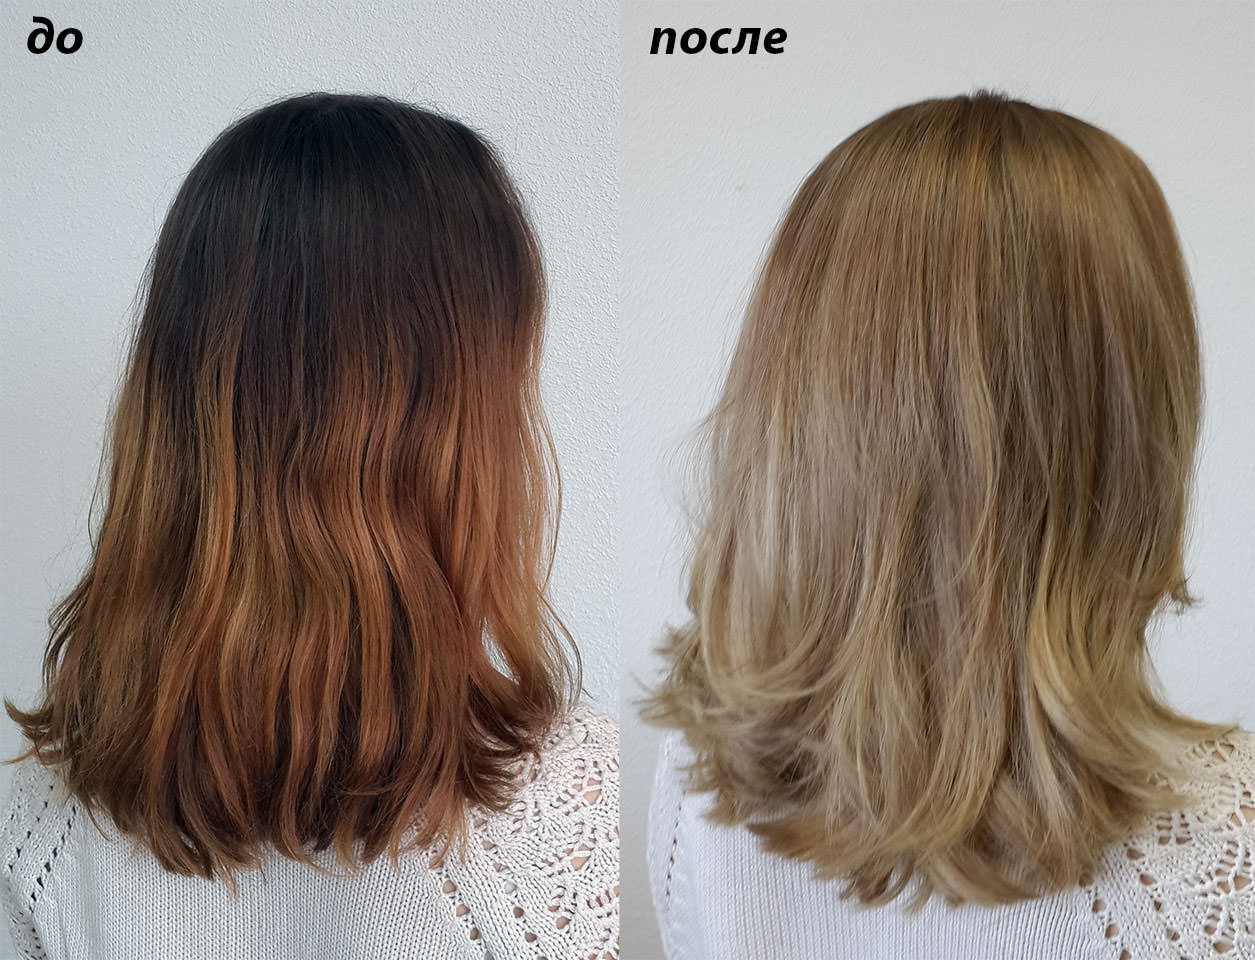 Насколько светлее. Осветление волос до и после. Окрашивание волос до и после. Осветленные волосы до и после. Окрашивание осветленных волос до и после.